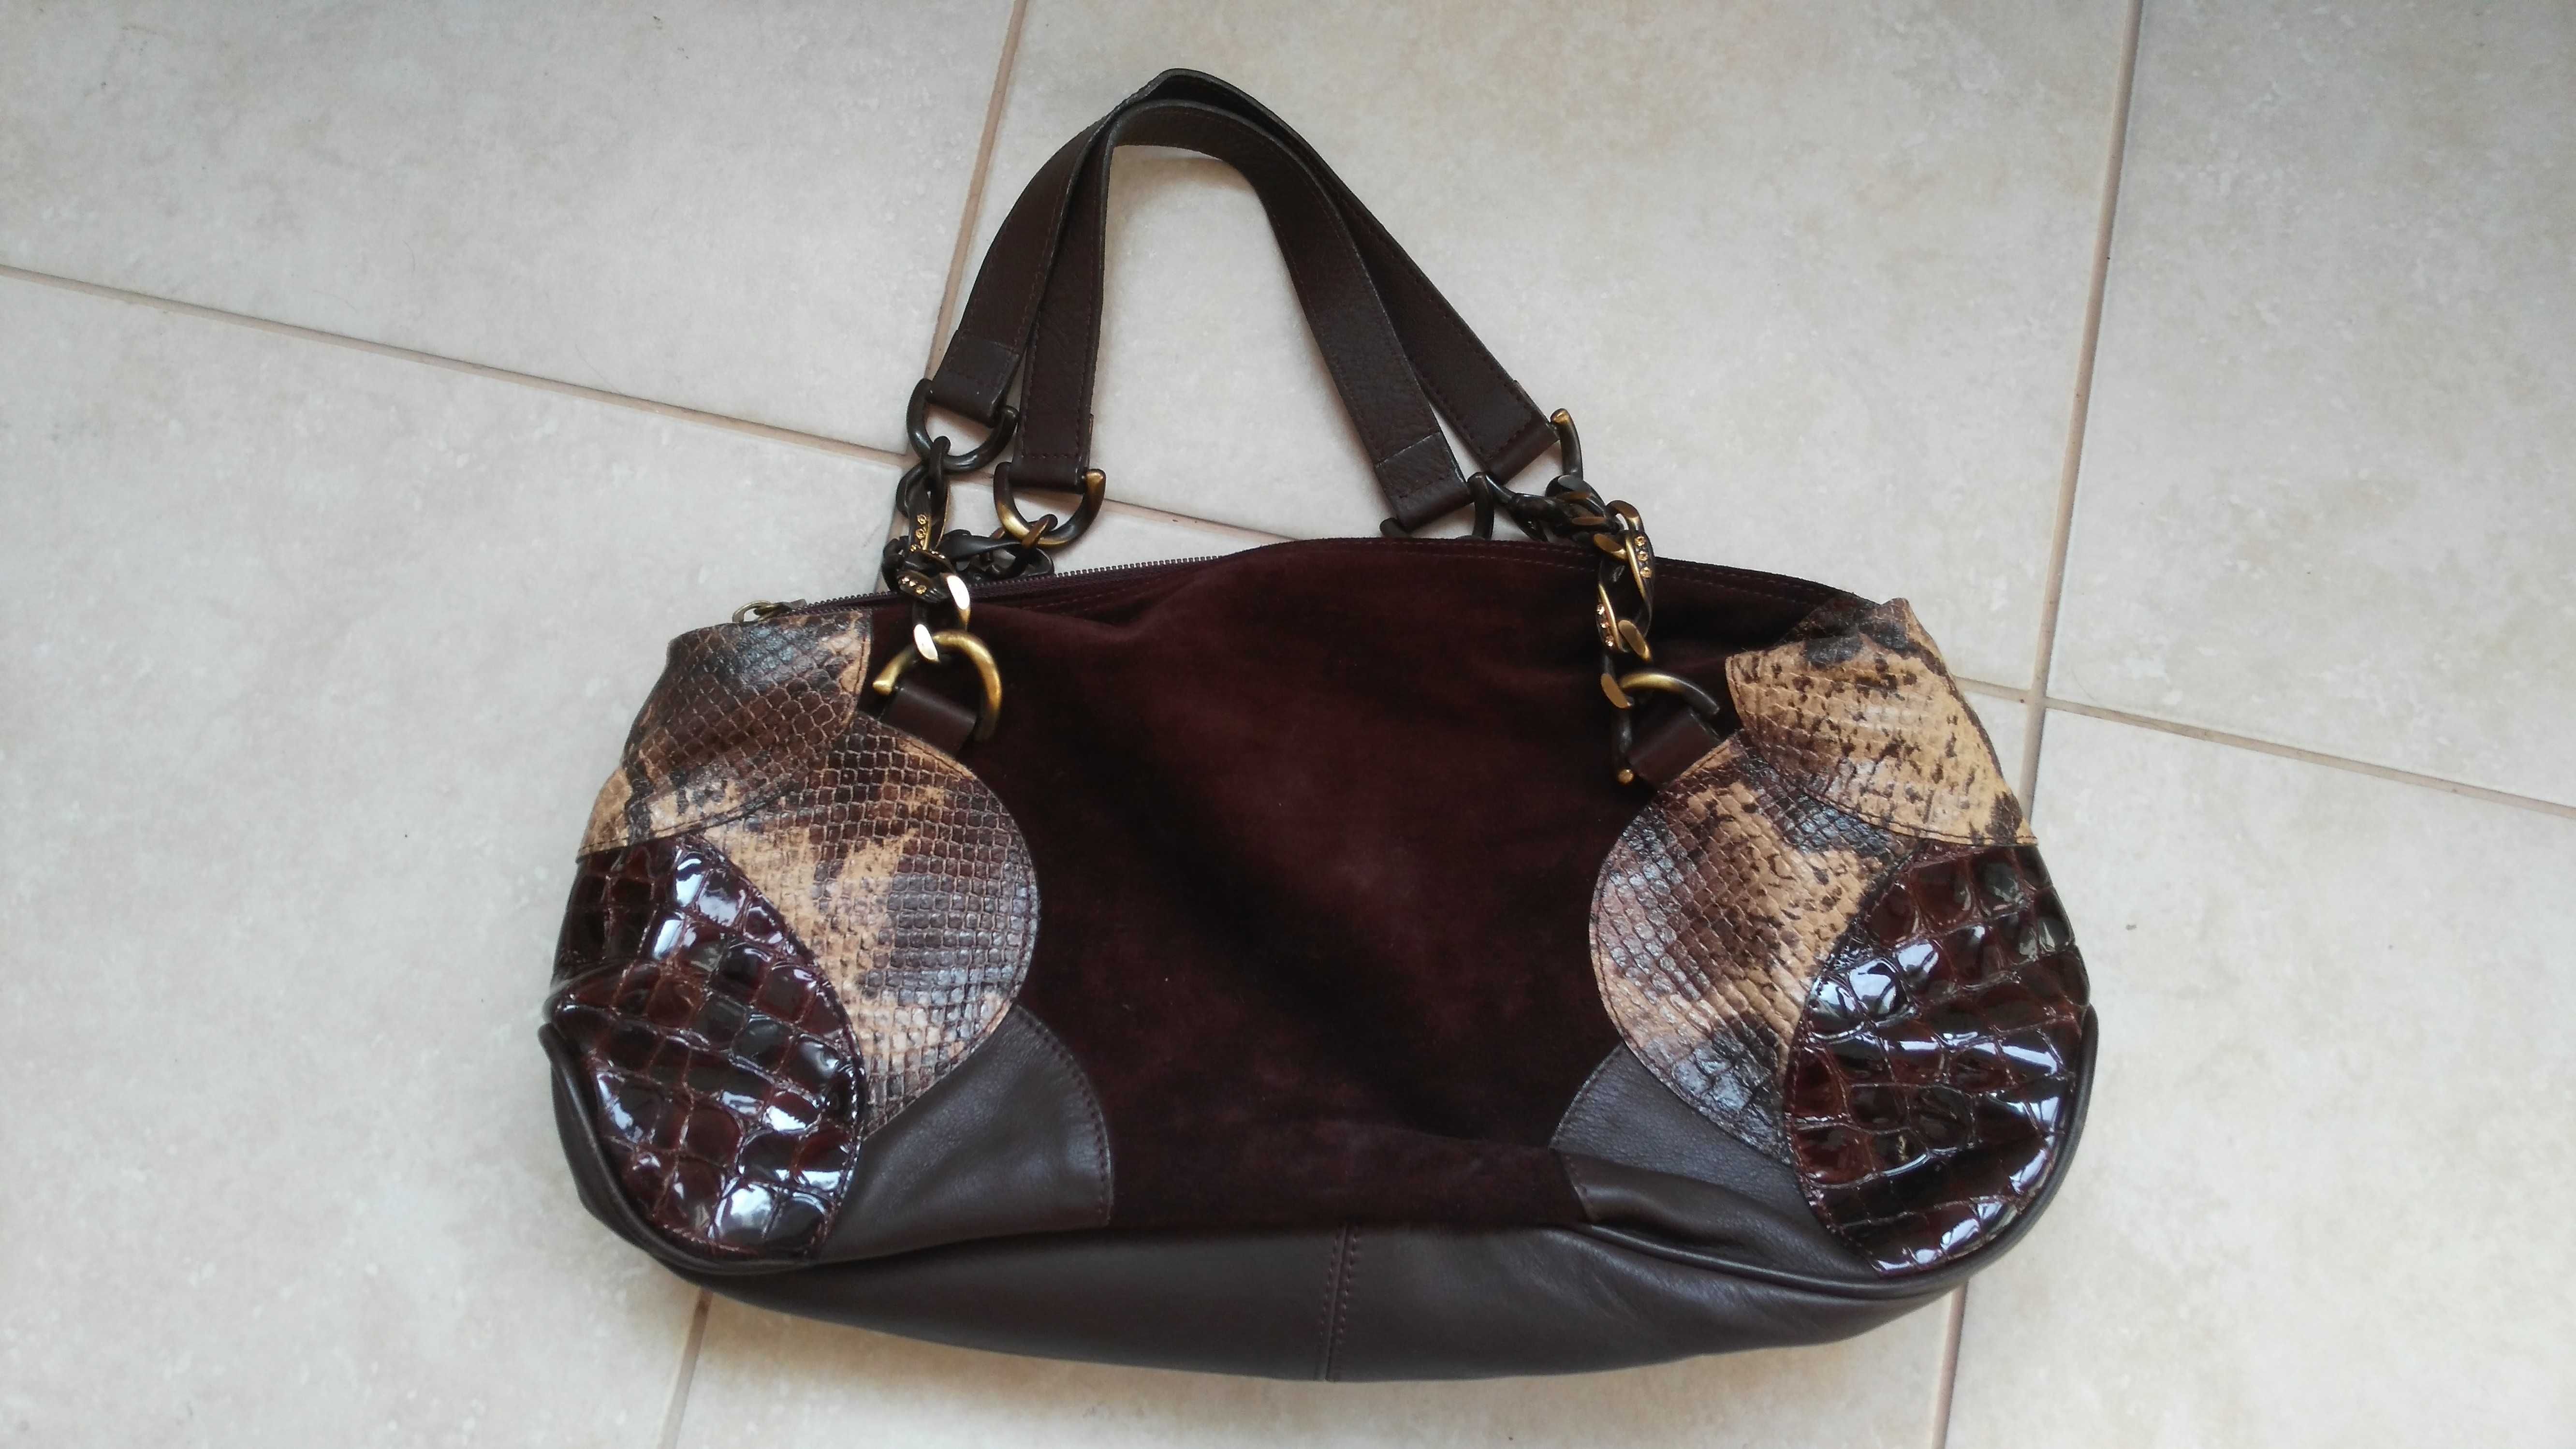 итальянская сумка Marina, коричневая, замша, оригинал